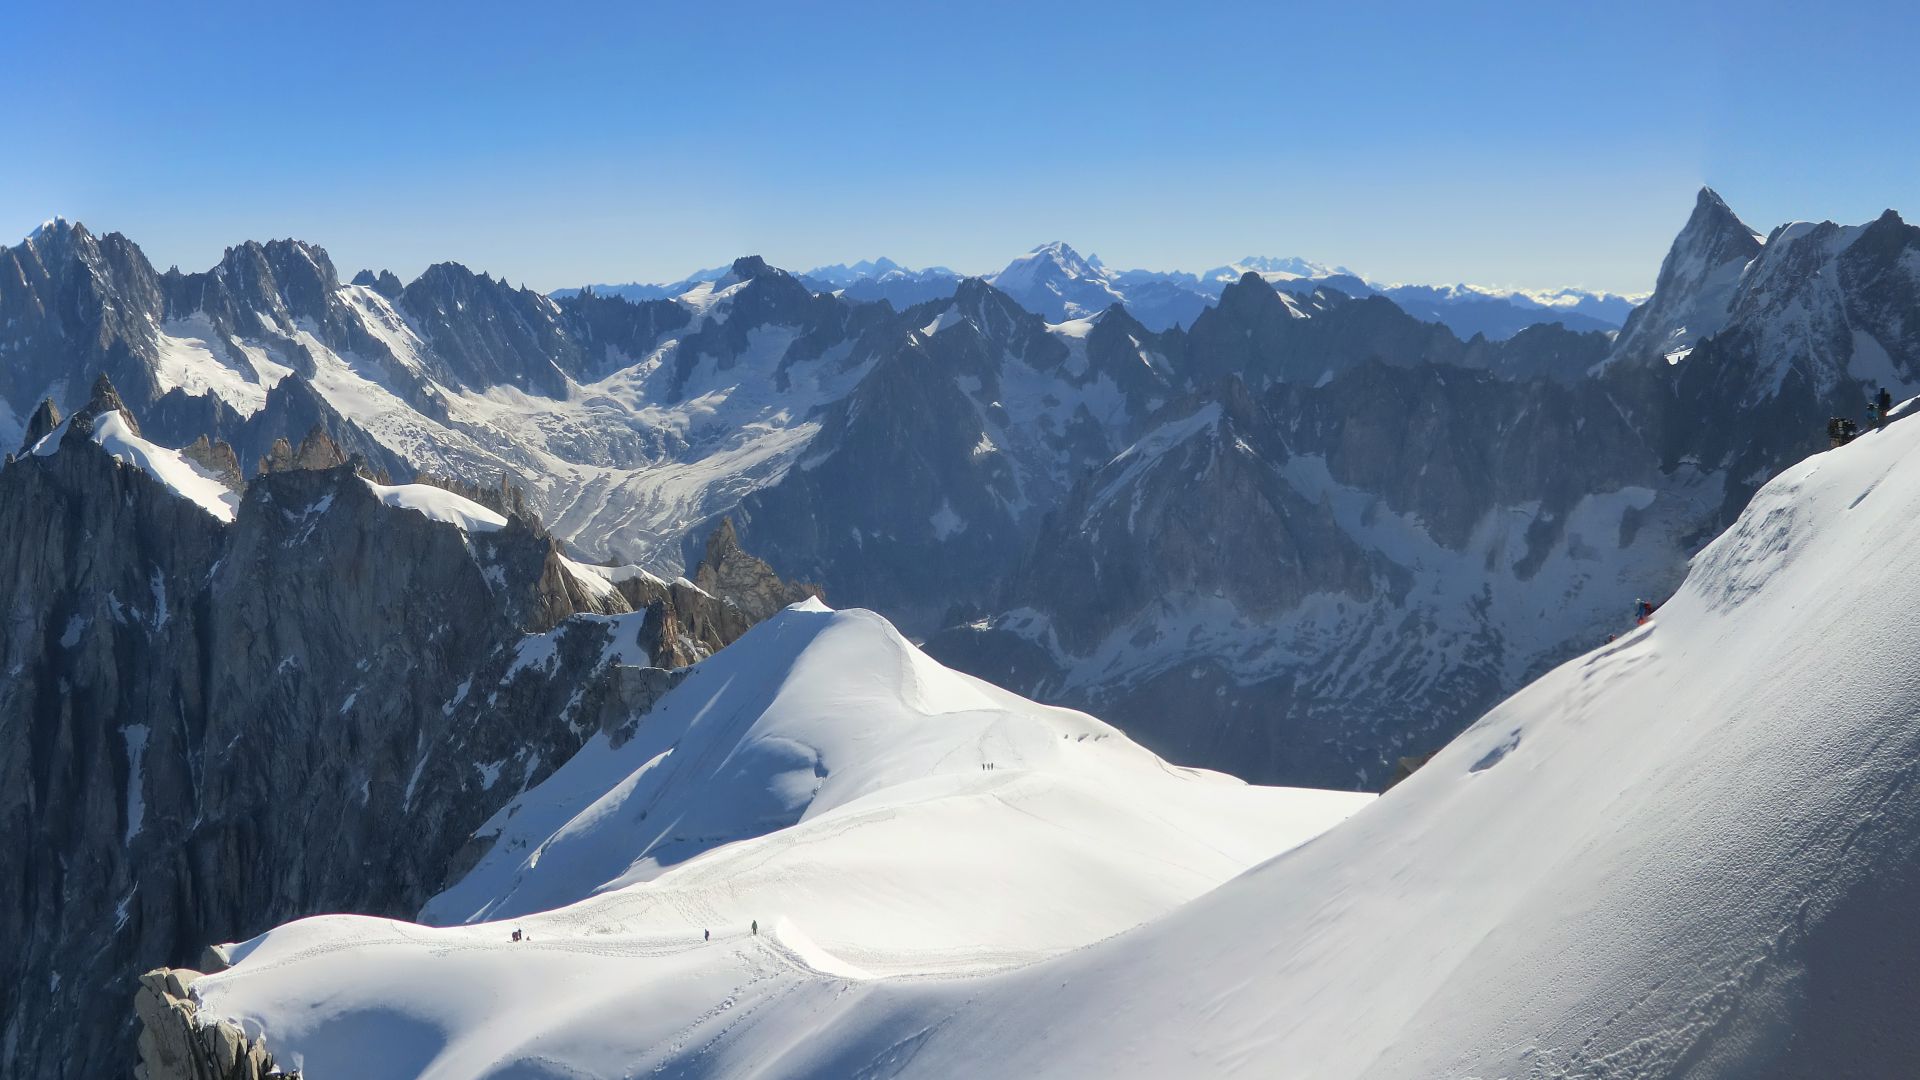 Aiguille du Midi, 4k, 5k wallpaper, French Alps, Europe, tourism, travel, snow, mountain (horizontal)